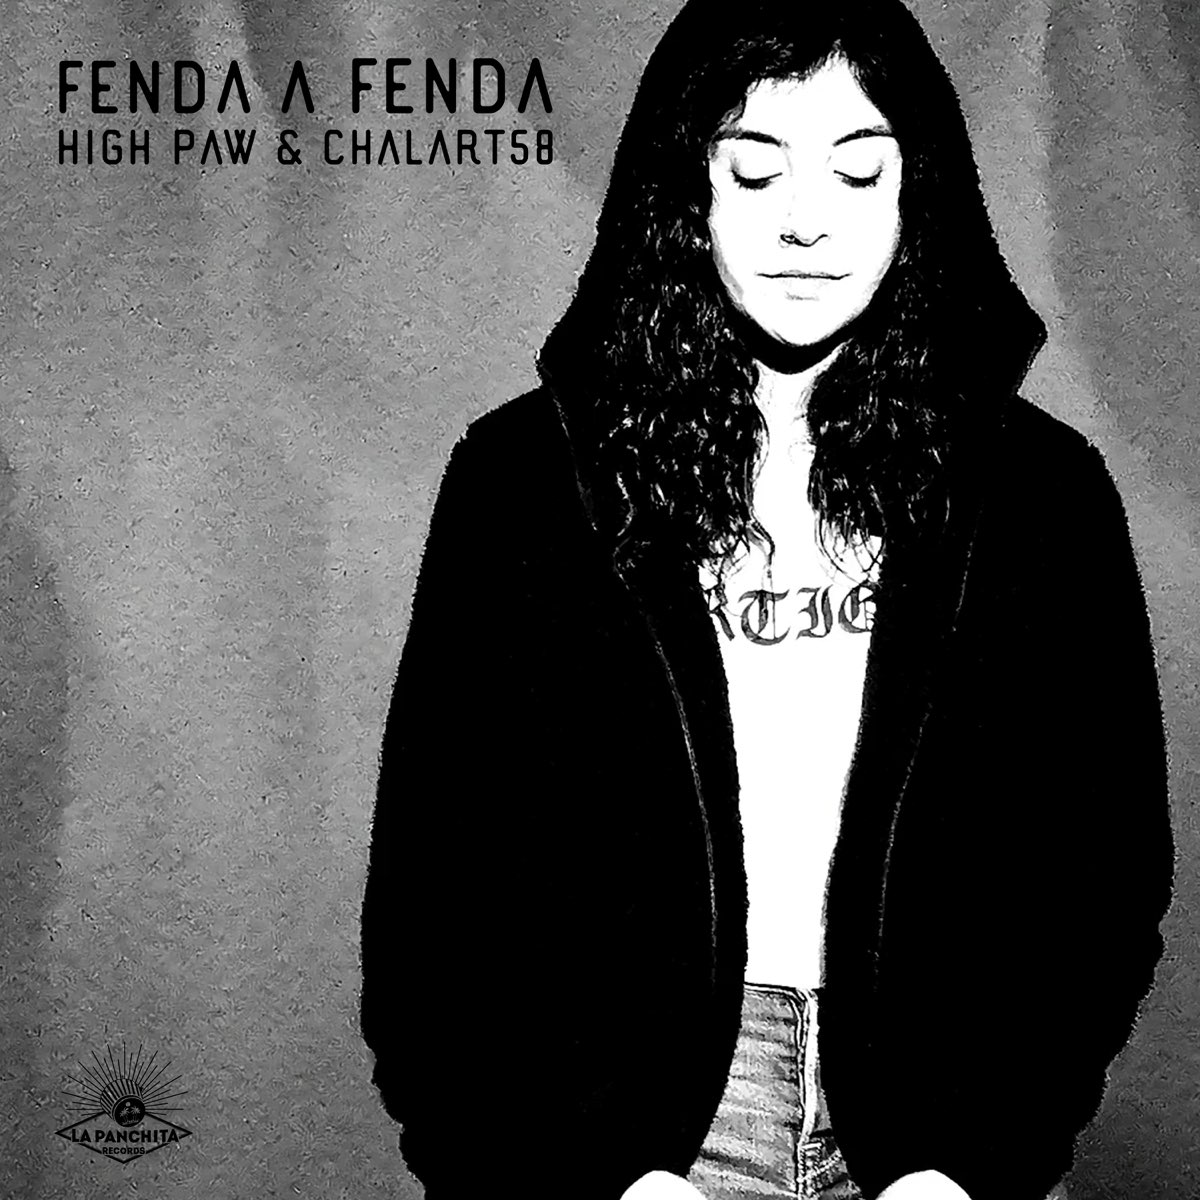 Loves gone fenda